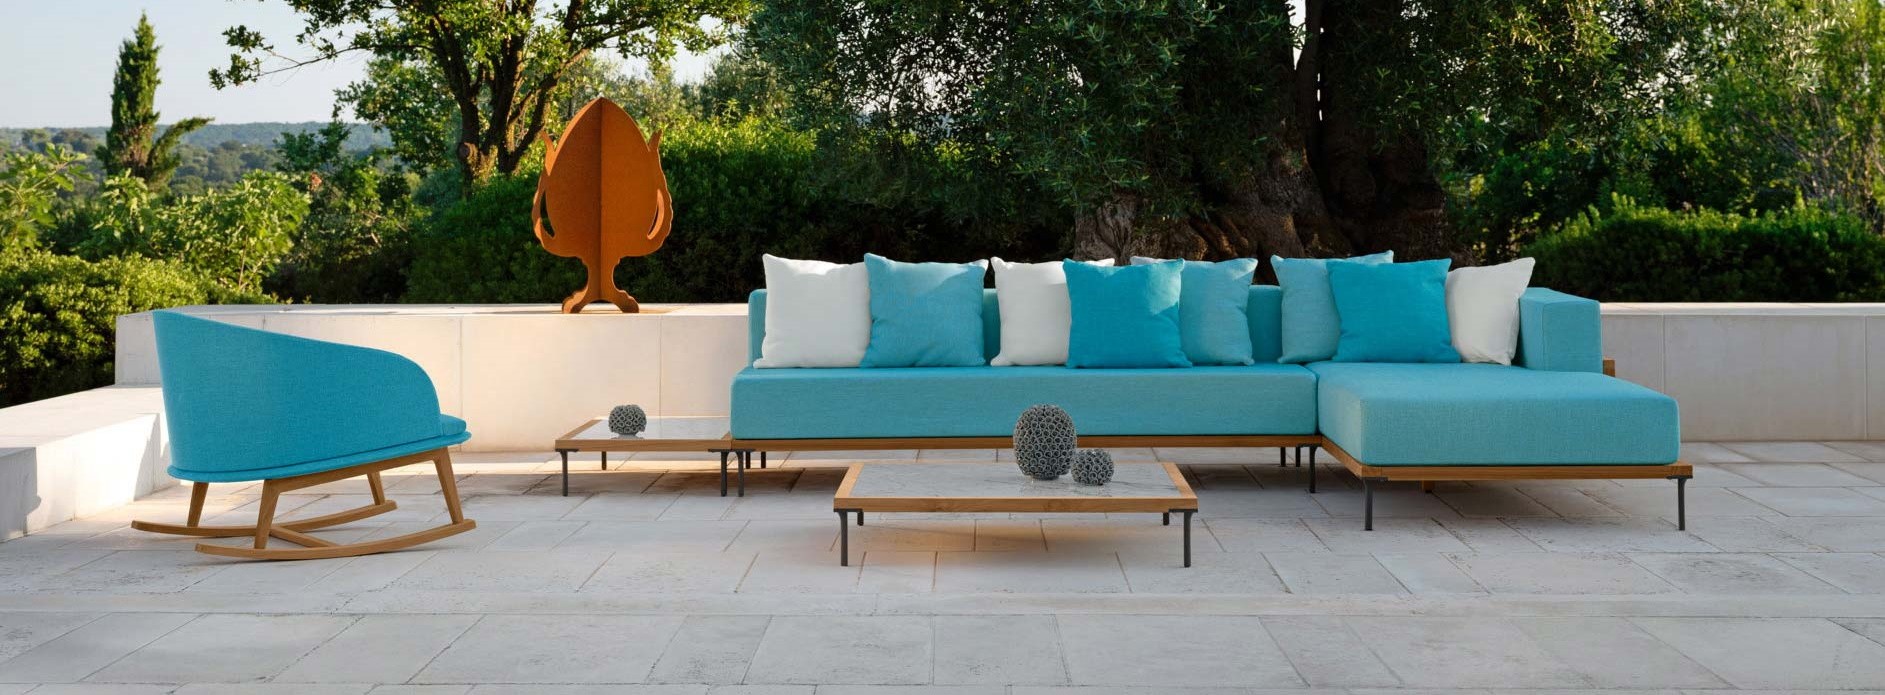 Arredamento outdoor per esterni e mobili giardino design